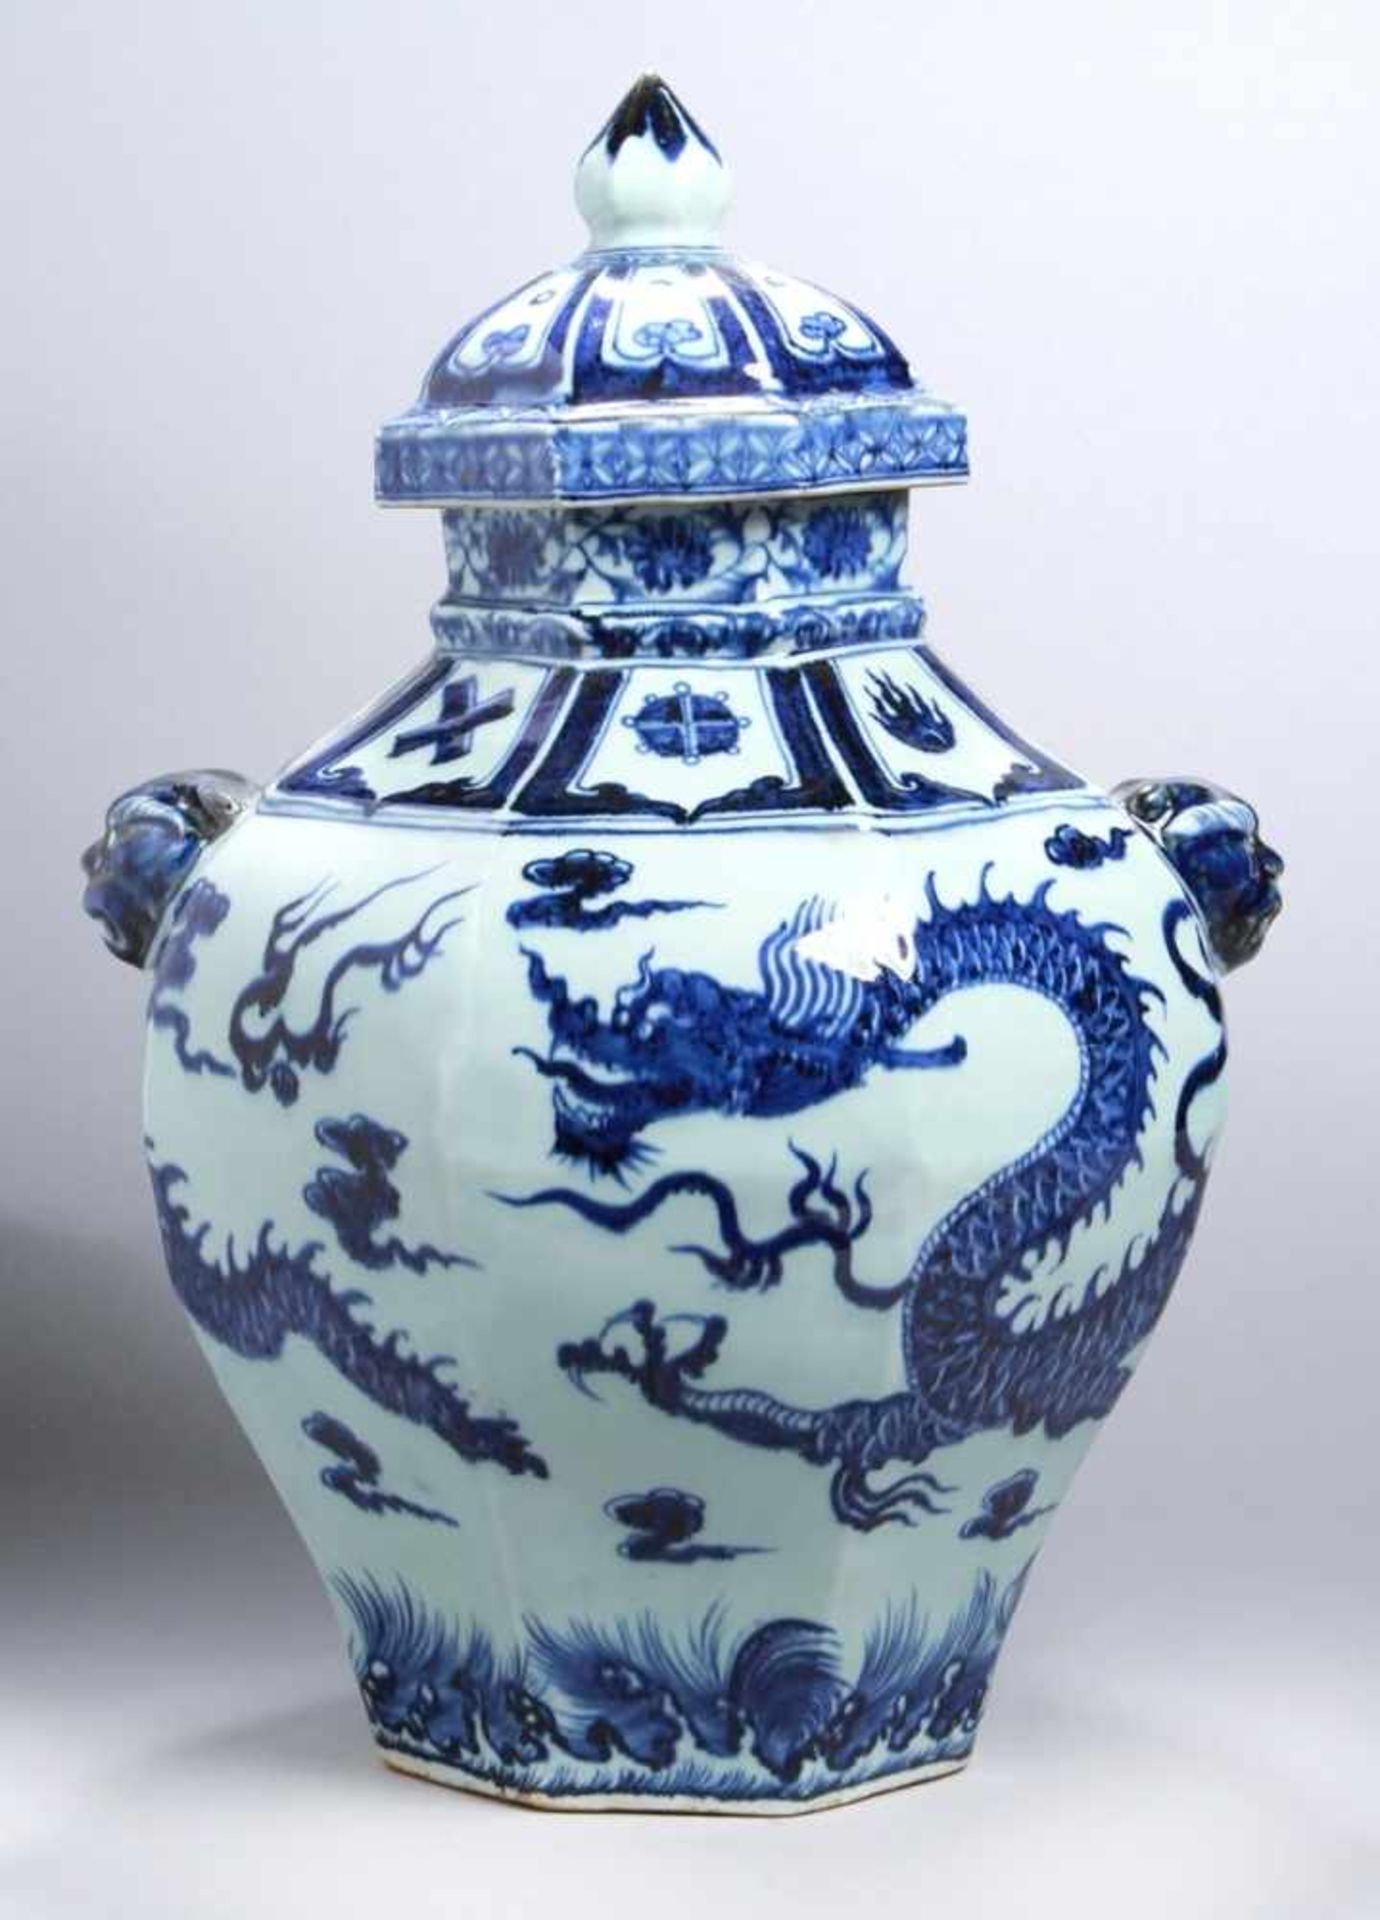 Porzellan-Deckelvase, China, wohl 20. Jh., achteckiger Stand, sich zur Schulter